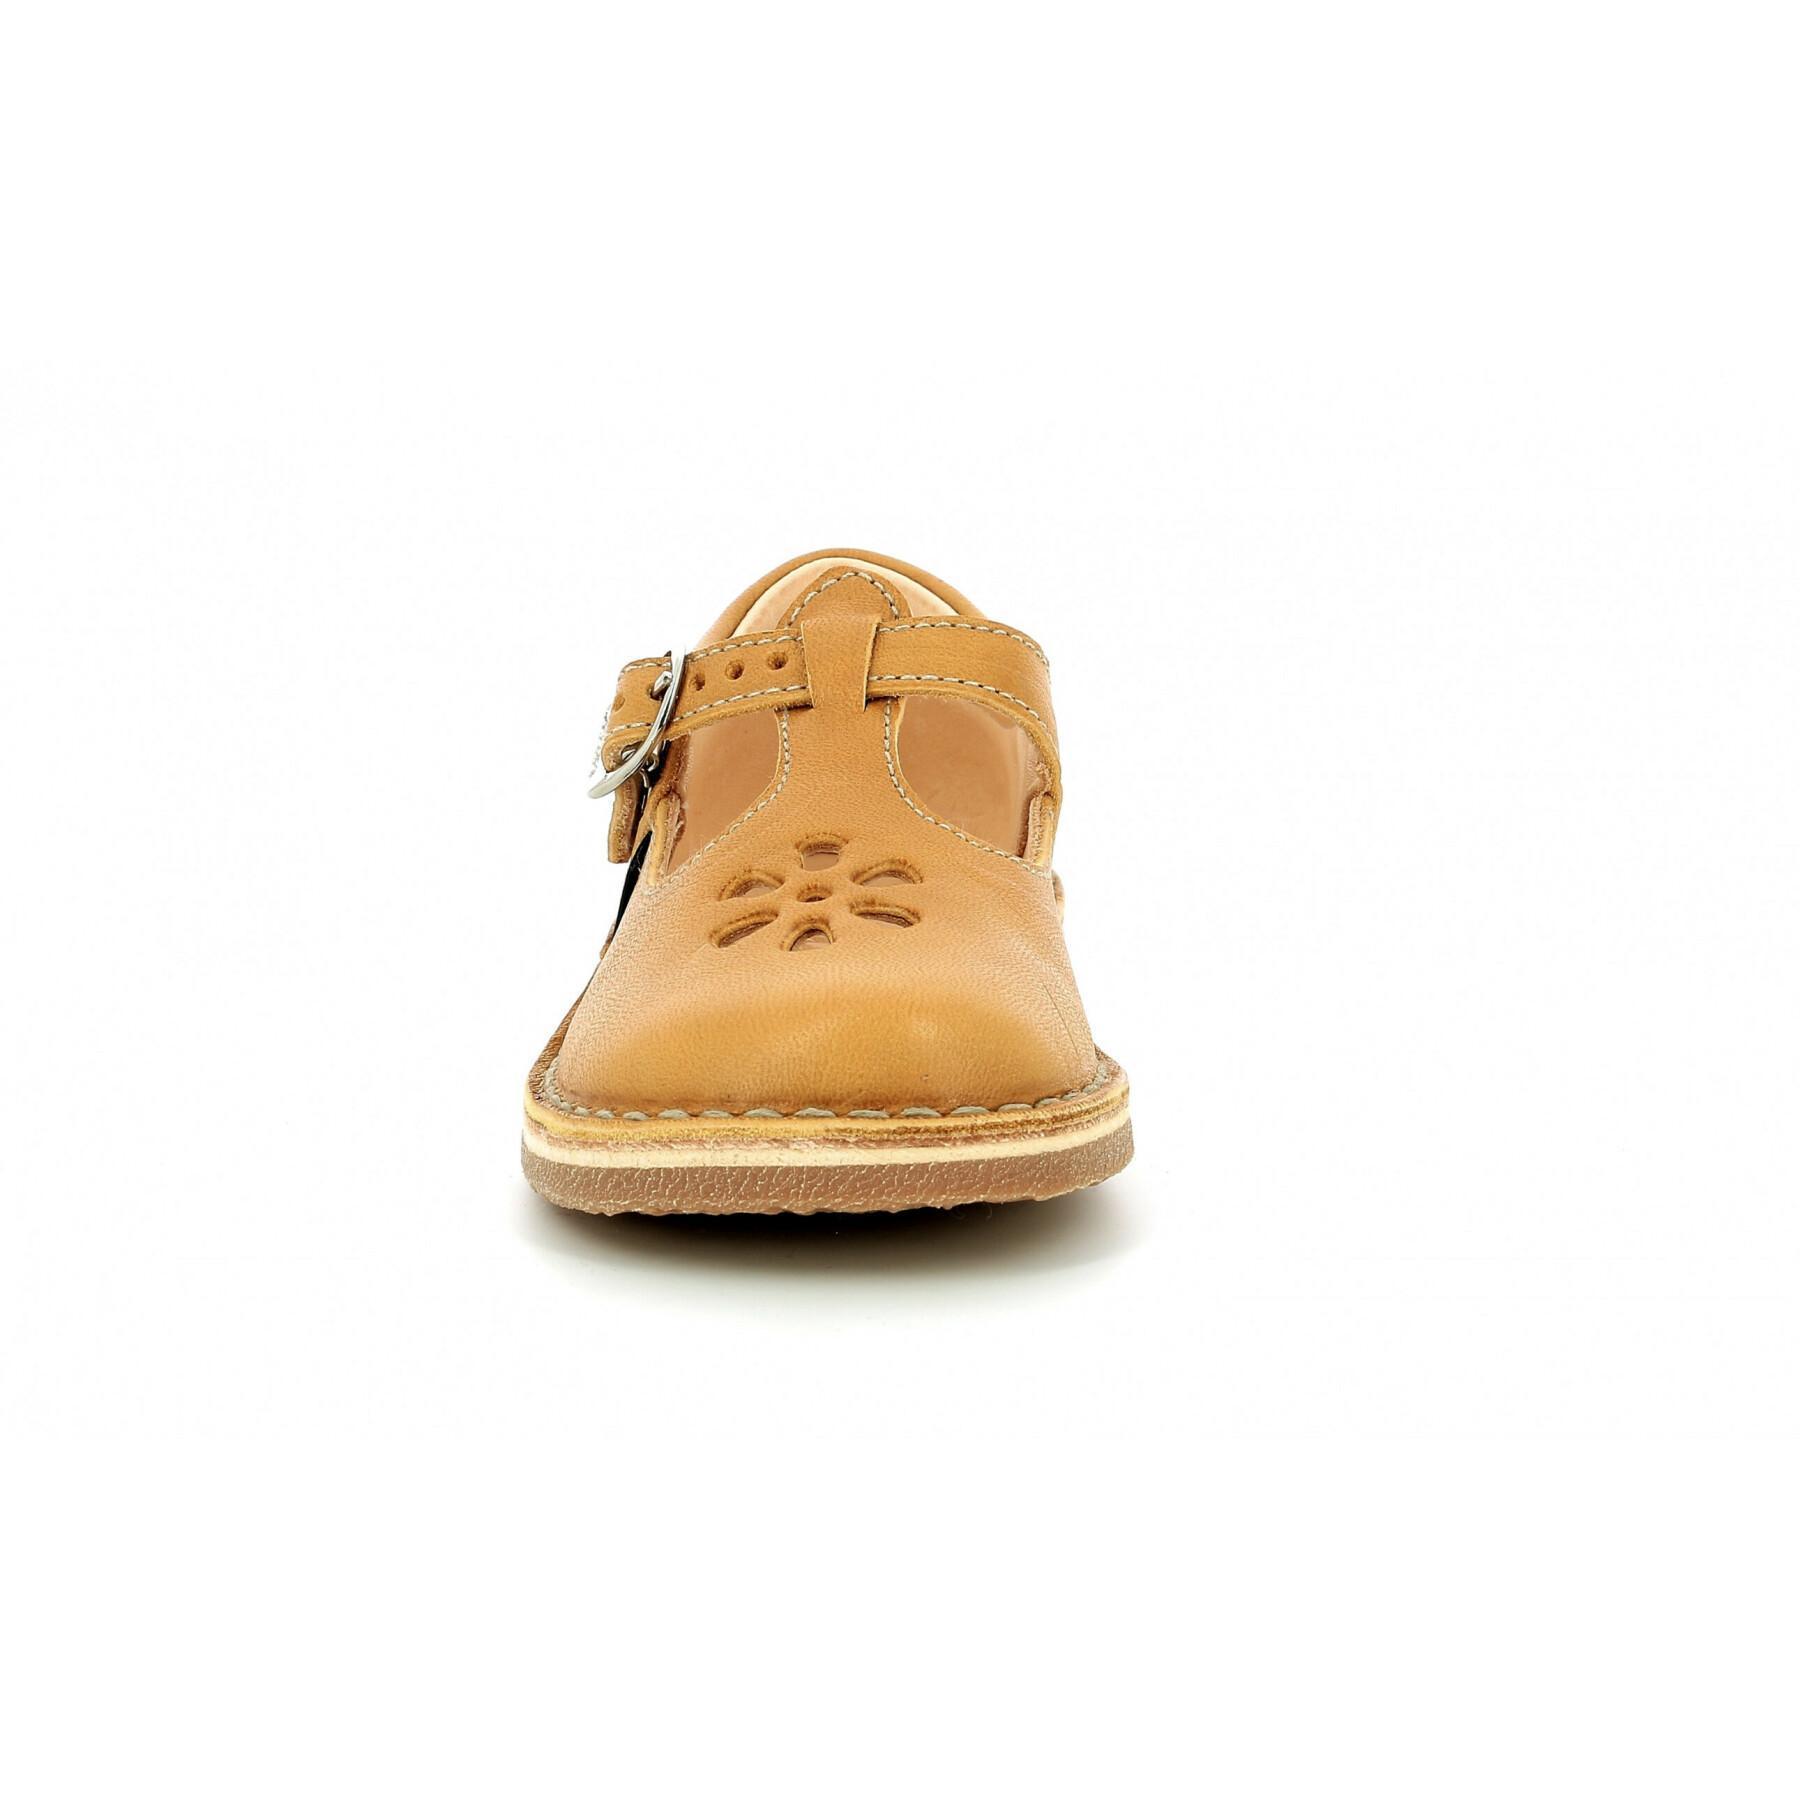 Sandały dla dzieci Aster Dingo-2